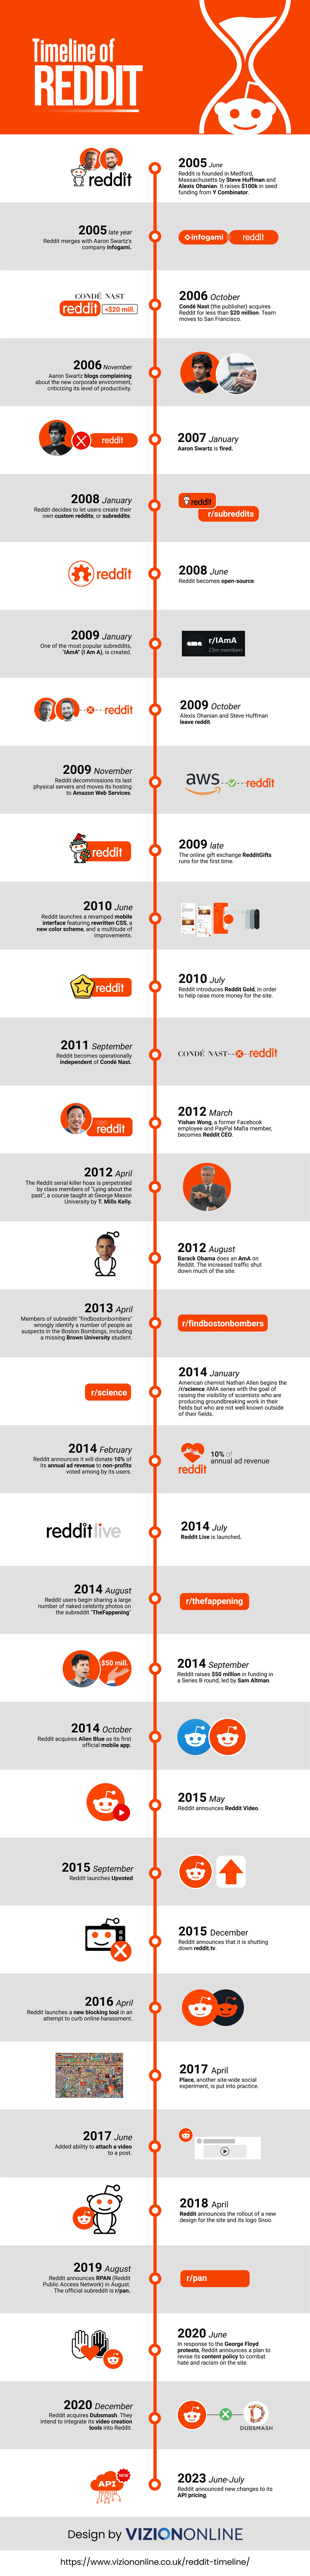 Reddit Timeline Infographic